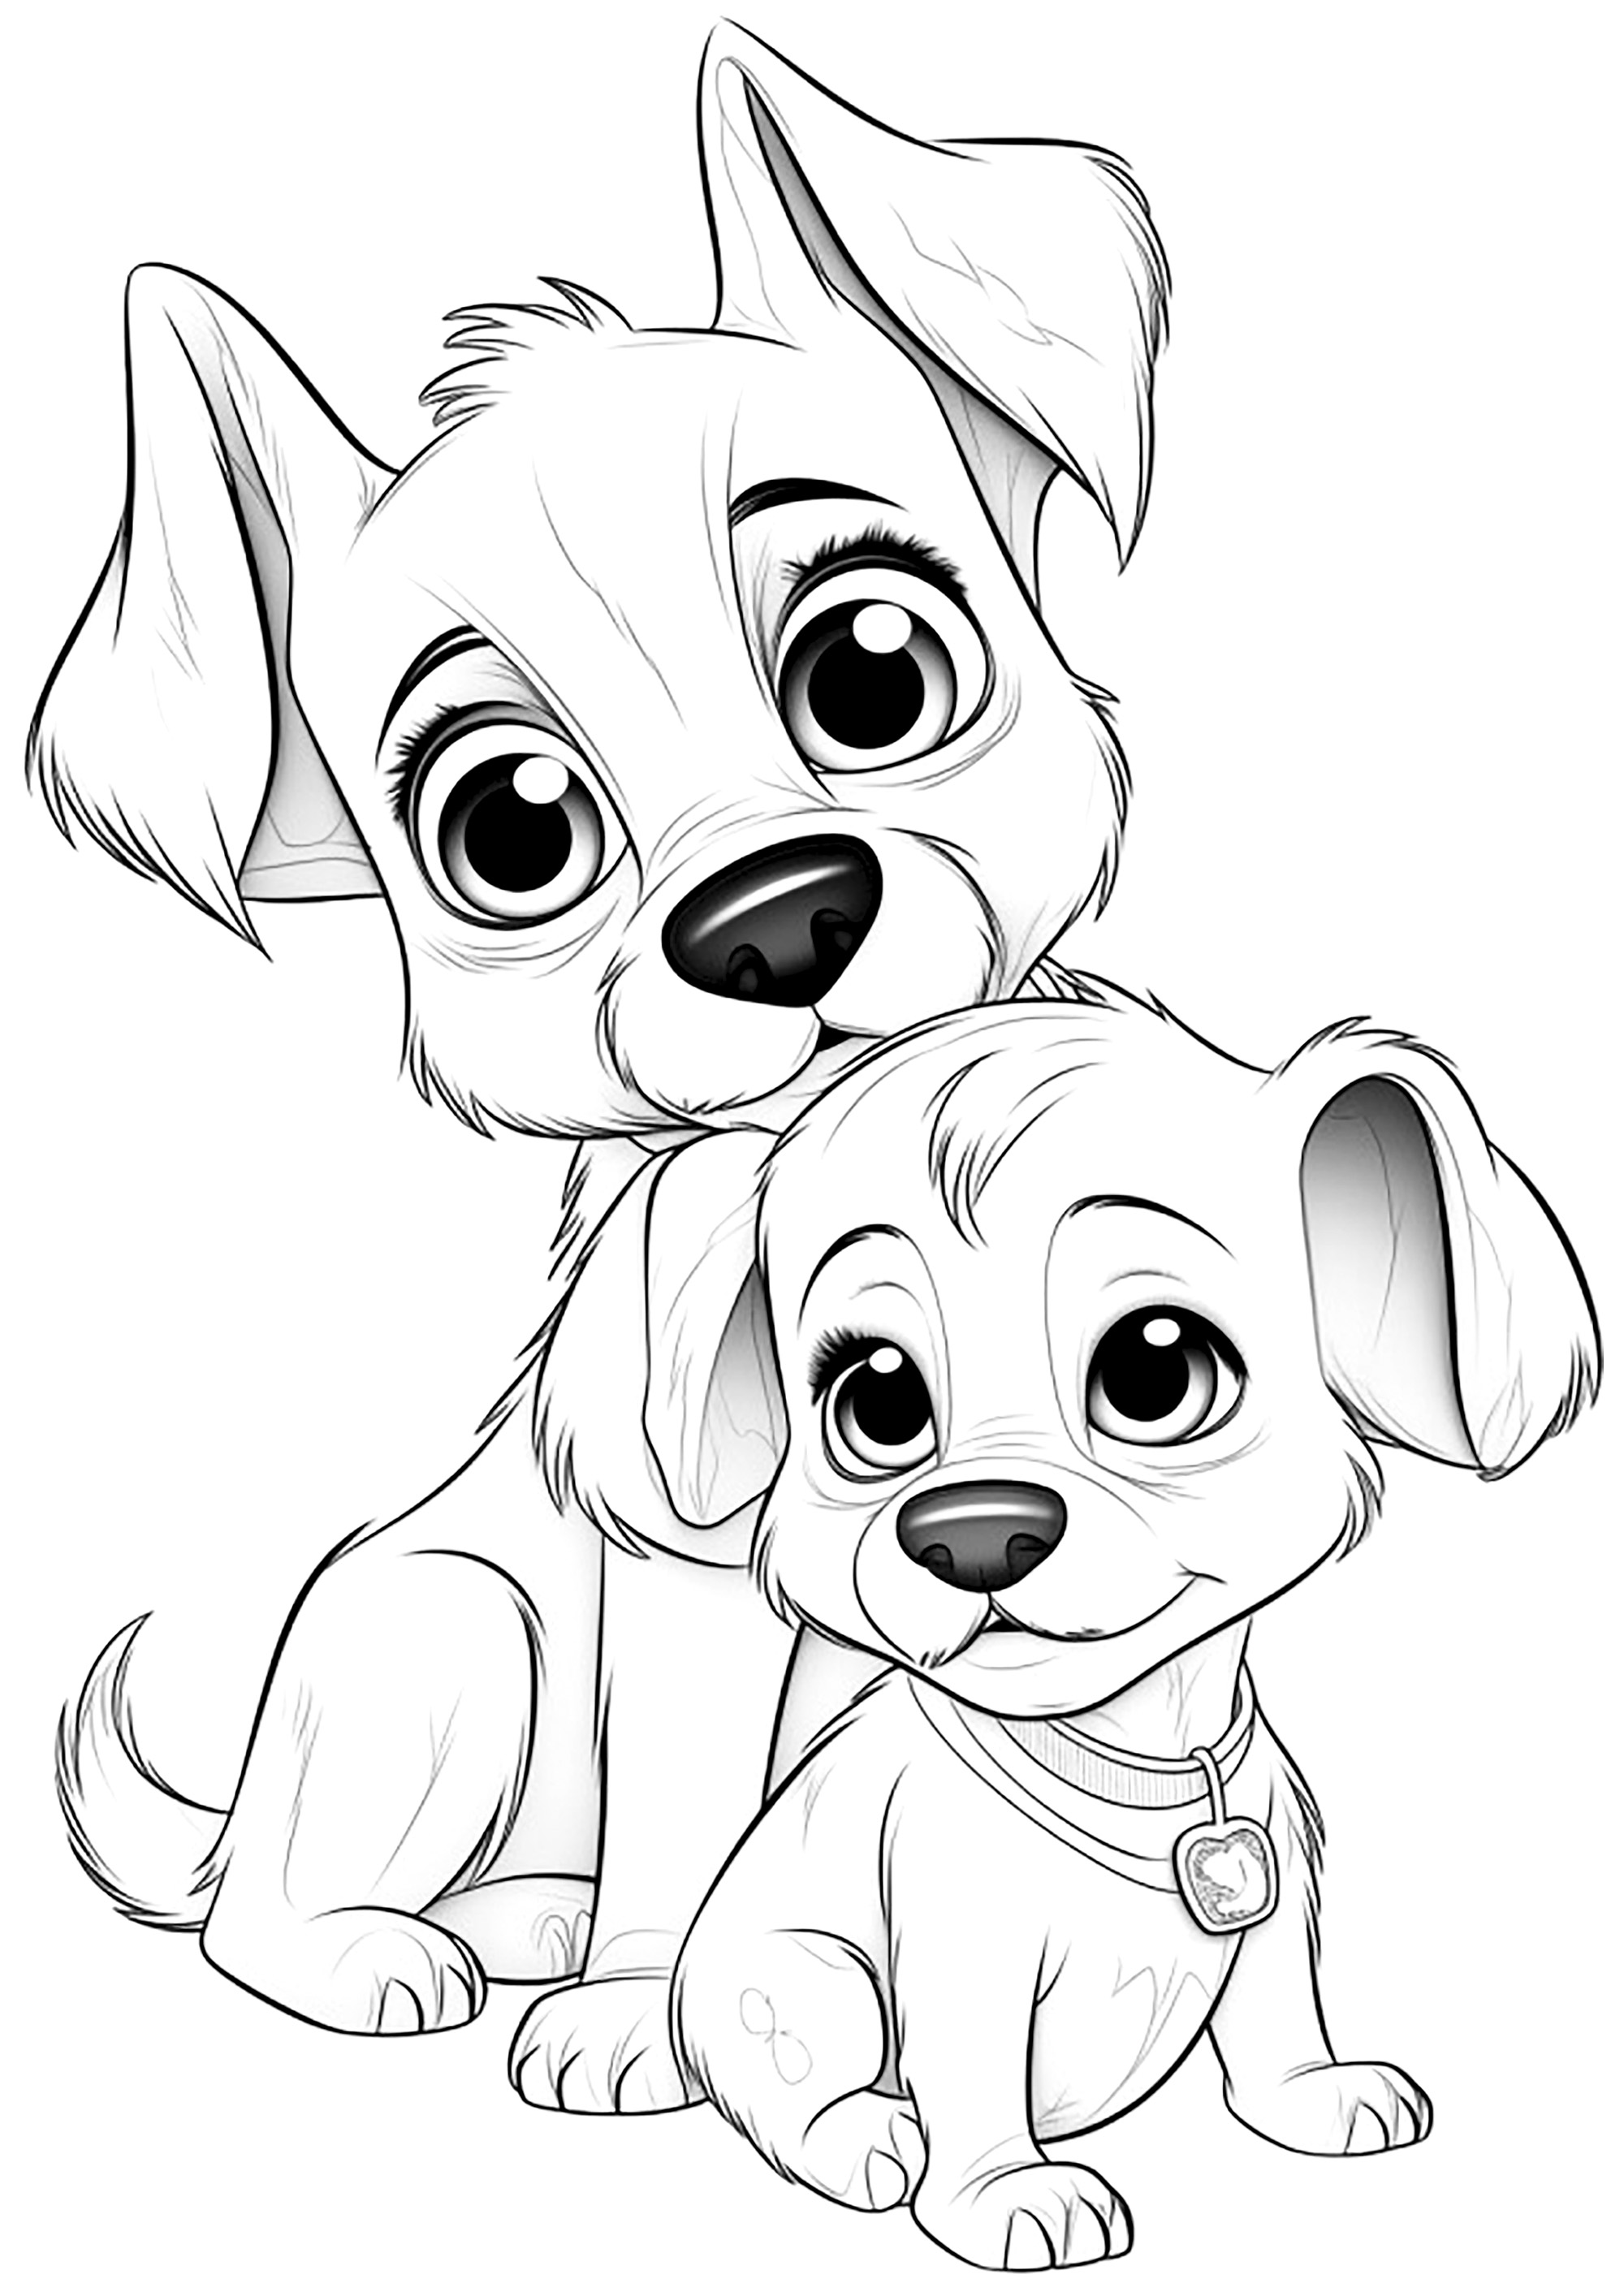 Dois Cães desenhados ao estilo Disney - Pixar